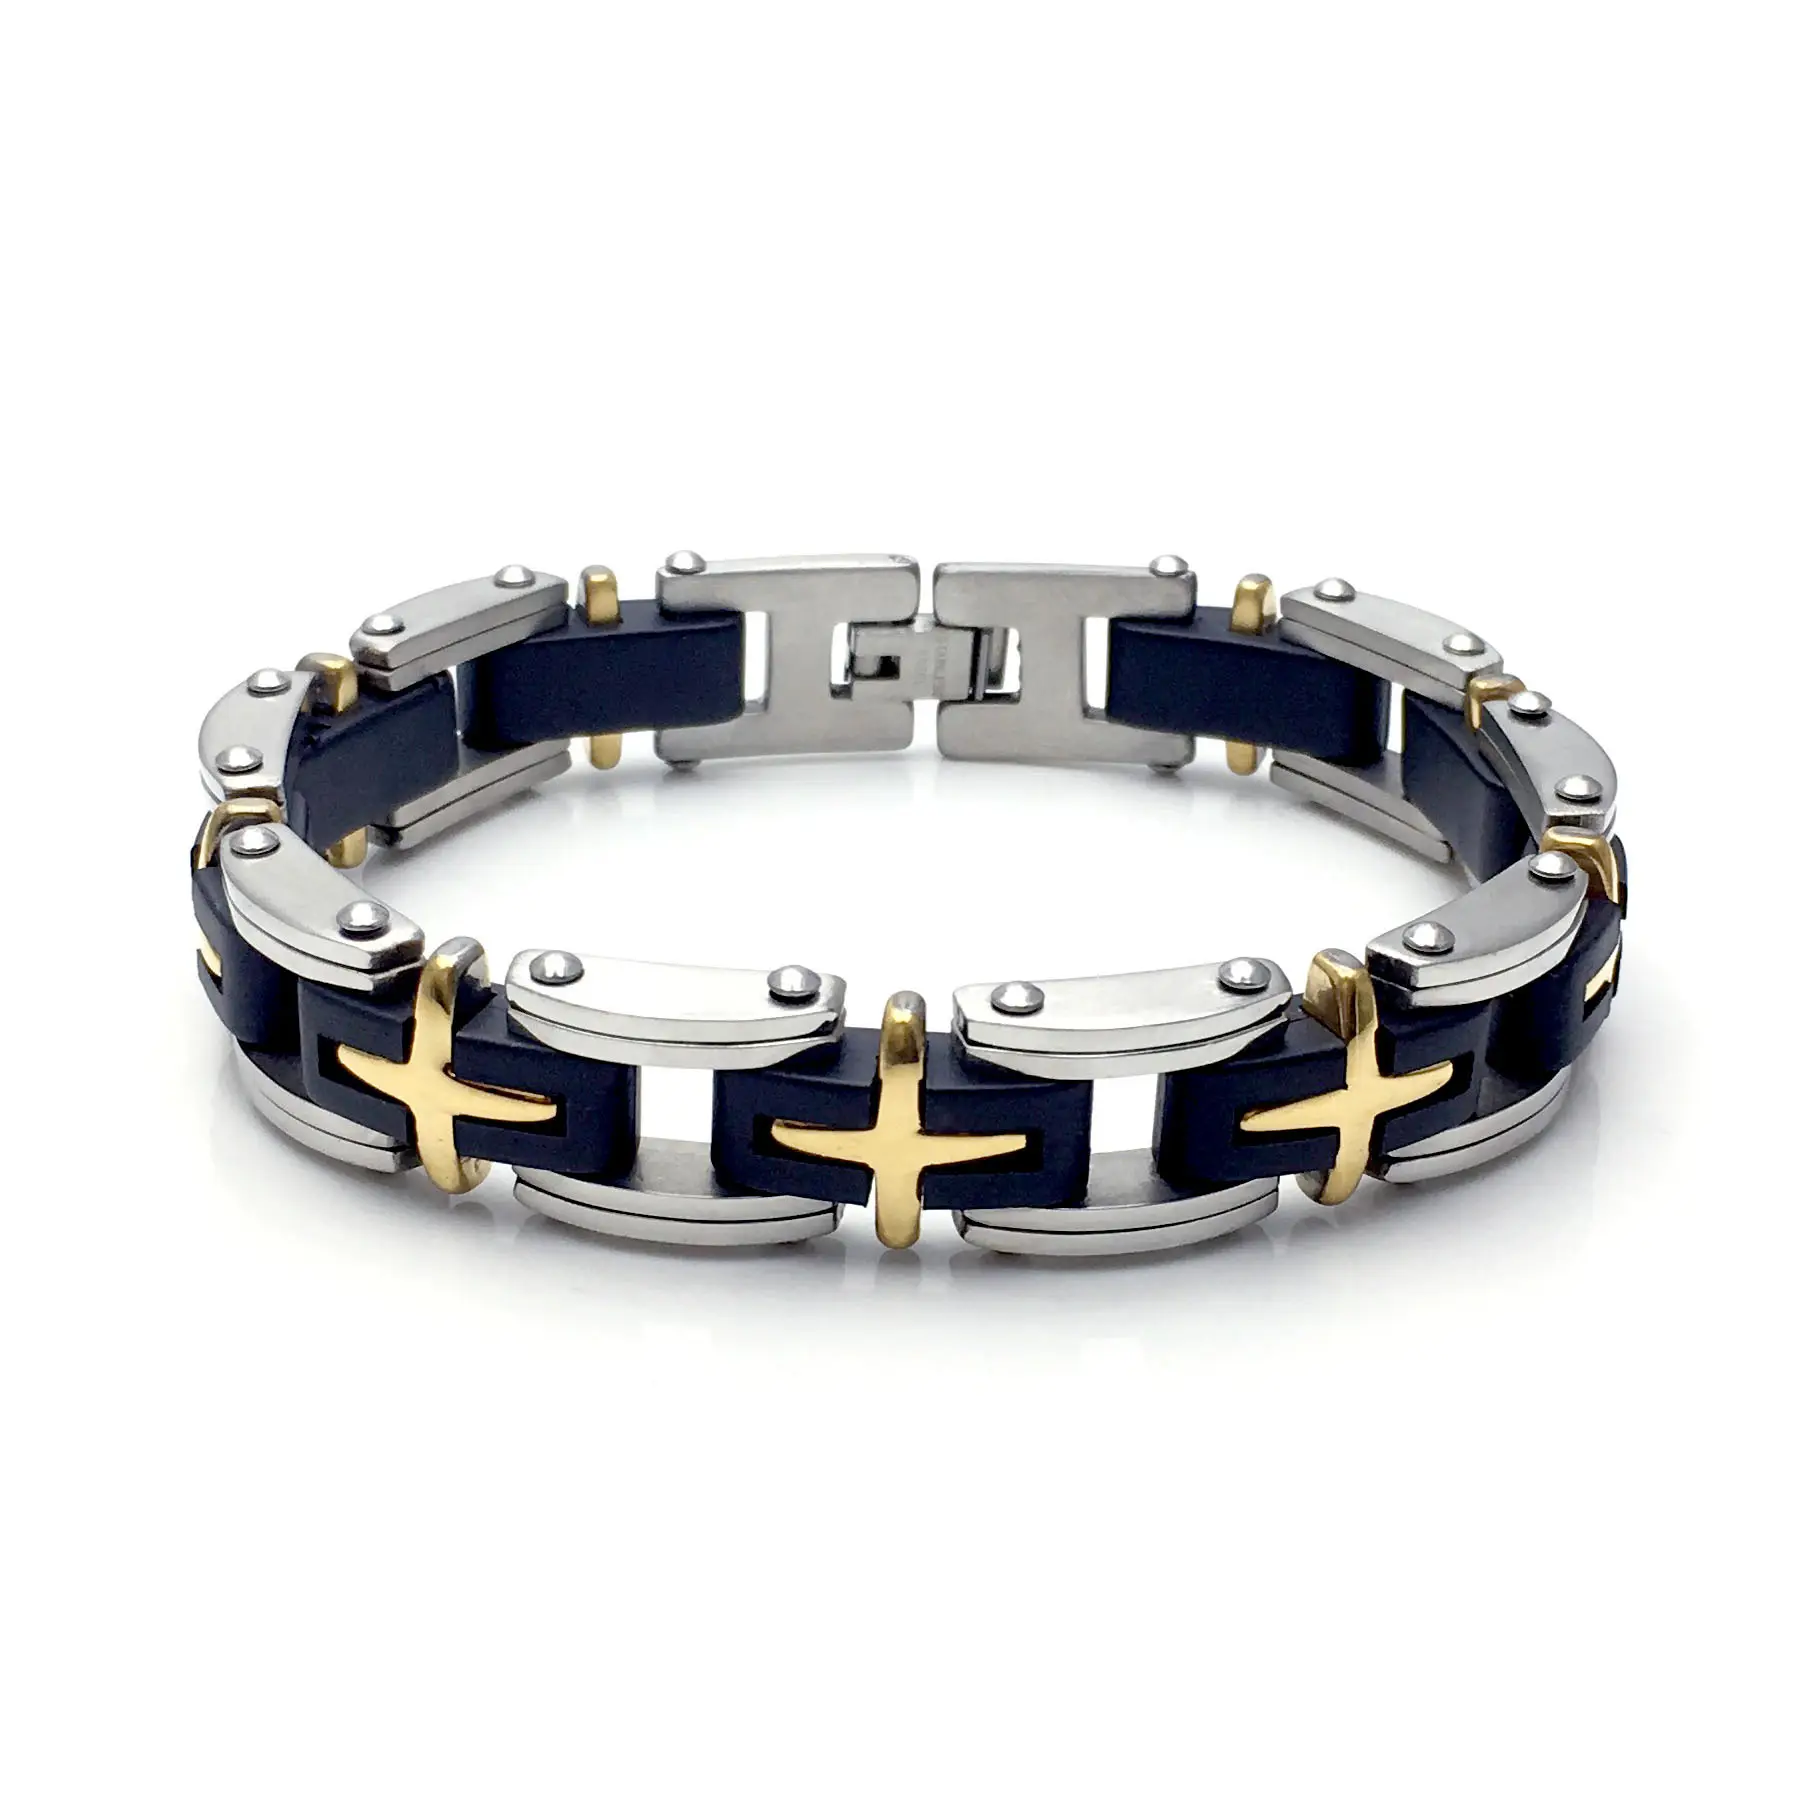 Religioso di alta qualità 316L in acciaio inox gomma nera Silicone oro argento croce moda gioielli braccialetto braccialetto uomo